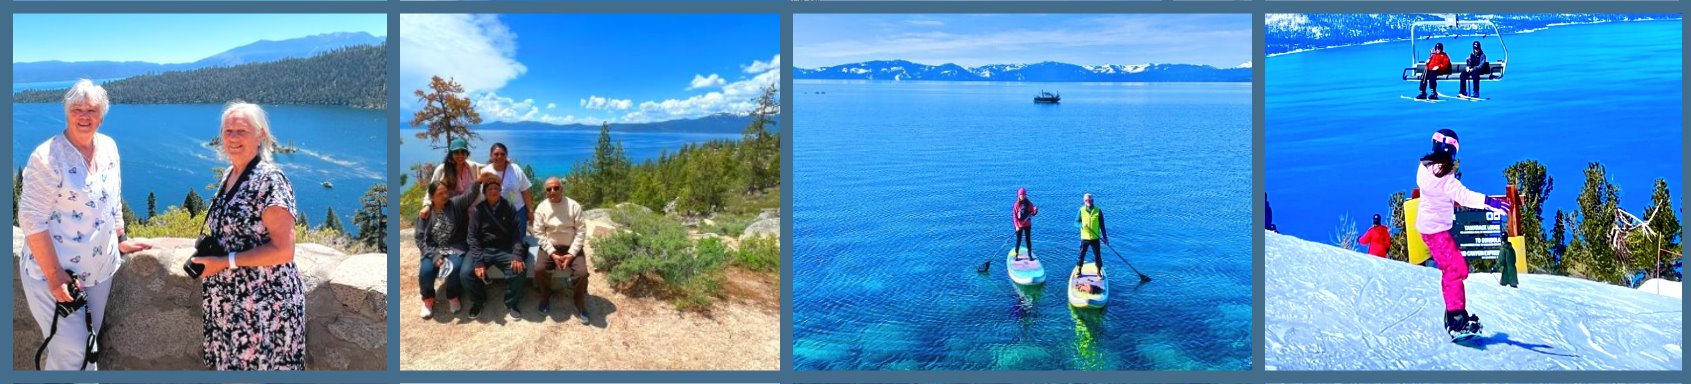 Lake-Tahoe-Winter-Vacation-Tours